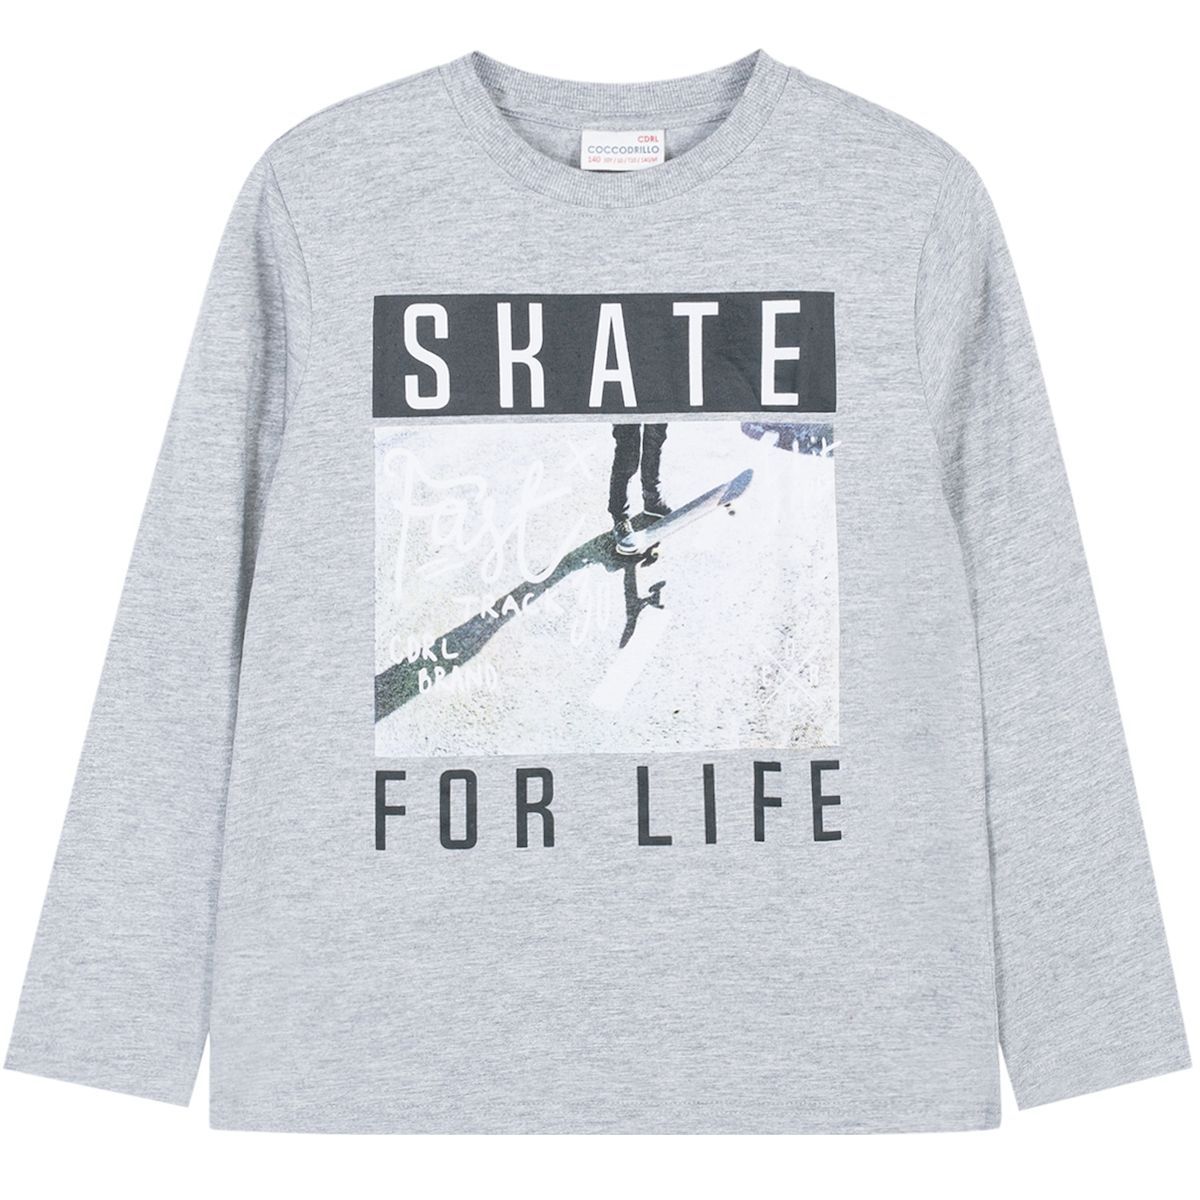    Coccodrillo Skate For Life, : . W191431M2SKA.  134